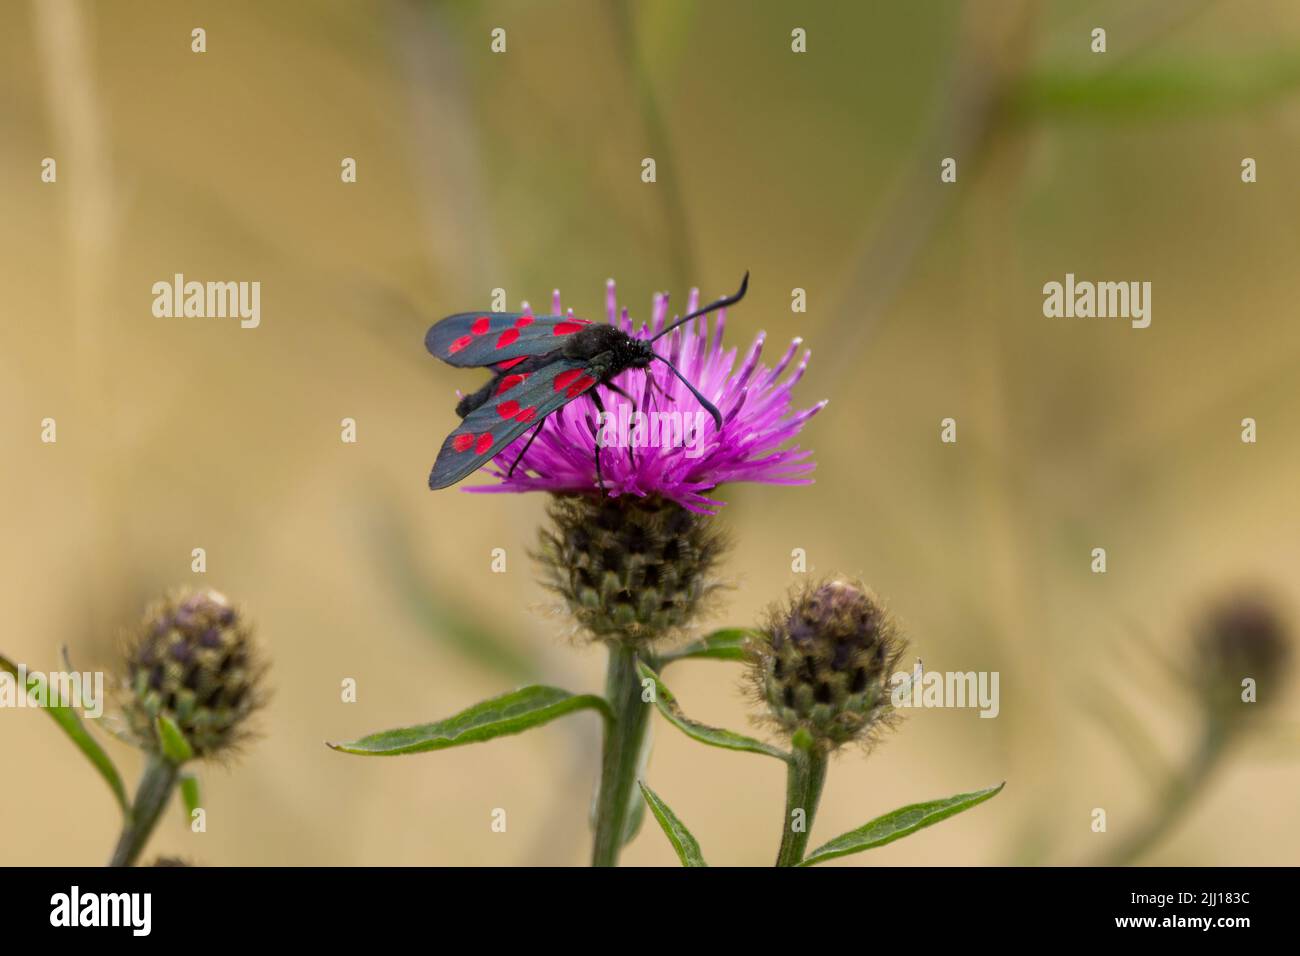 Seis manchas de la polilla del burnet (Zygaena filipénduae) en un floret púrpura del knapweed común (centaurea nigra) Seis manchas rojas emparejadas en las alas delanteras negras verdosas Foto de stock